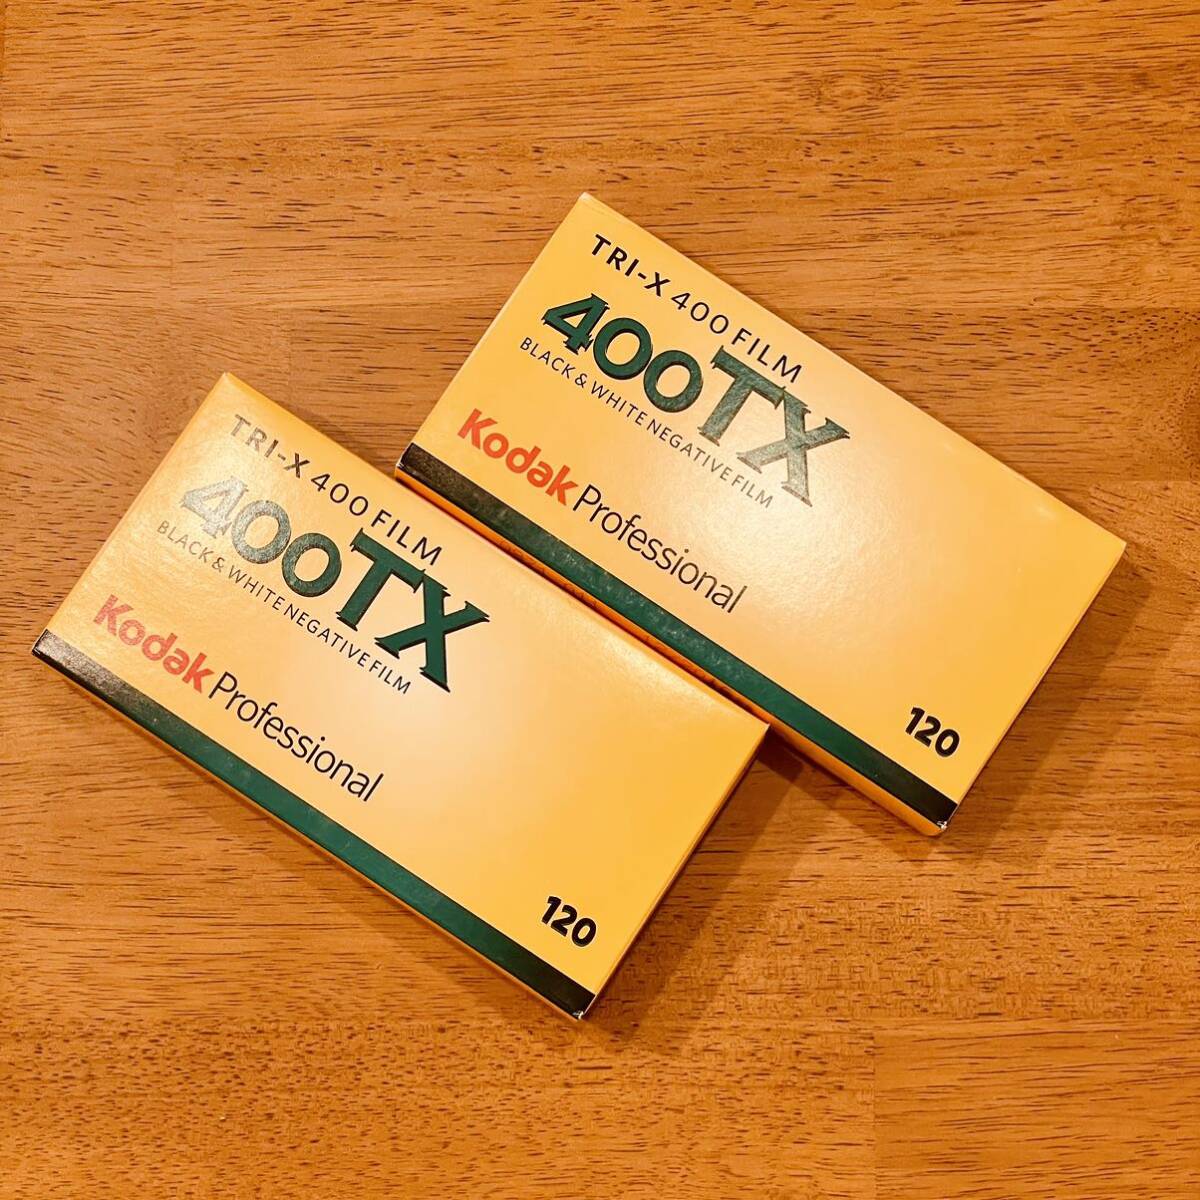 Kodak TRI-X 400 10本 コダック 400TX 2016年期限 120 ブローニー ① [期限切れフィルム]の画像1